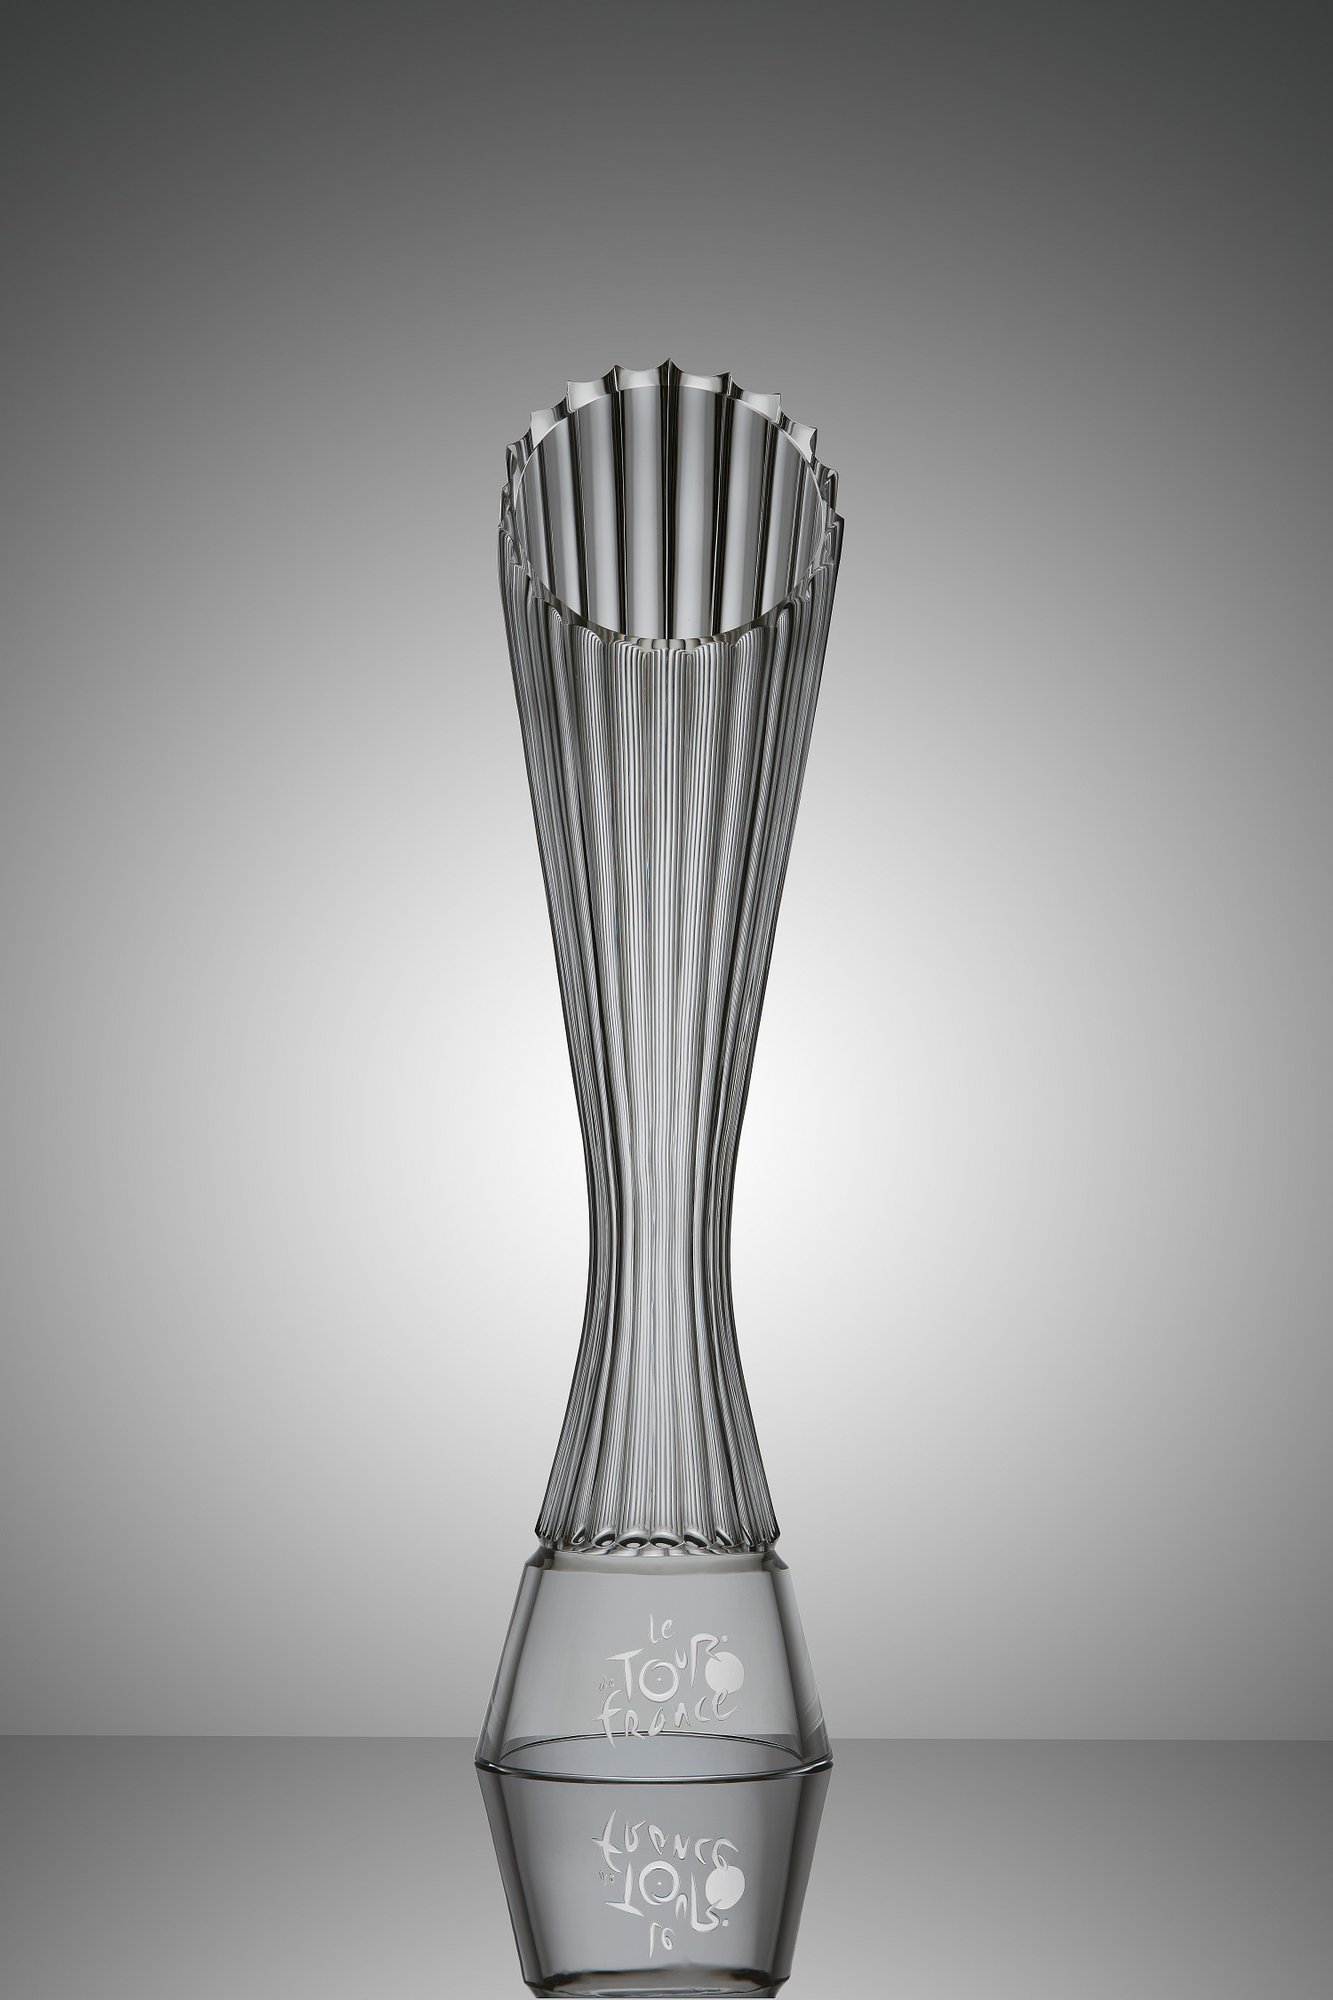 Škoda Design navrhl trofeje pro vítěze Tour de France 2018